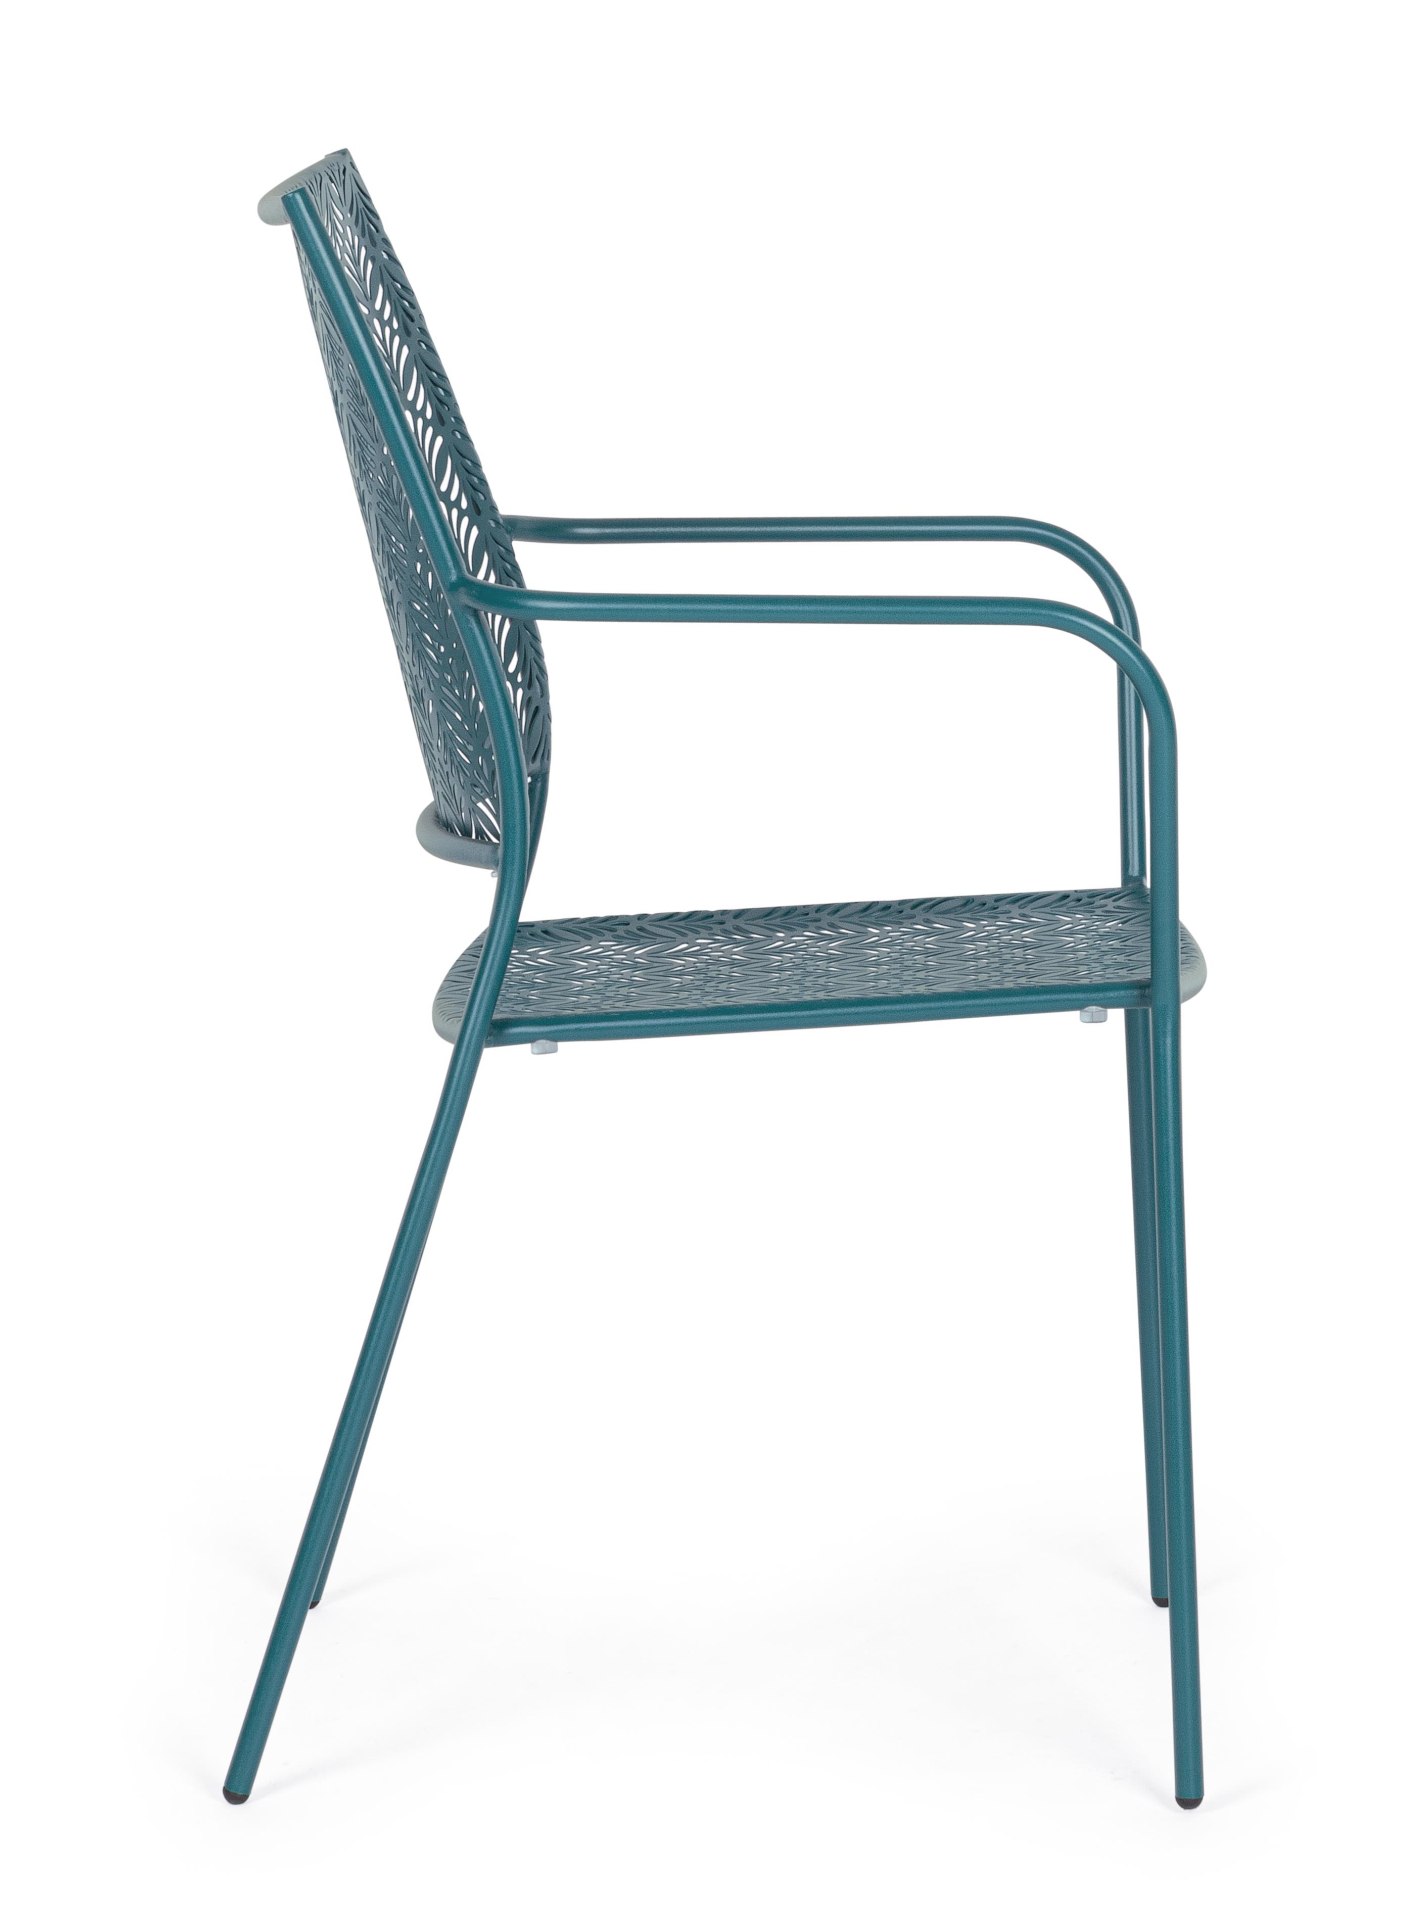 Der Gartenstuhl Lizette überzeugt mit seinem klassischen Design. Gefertigt wurde er aus Aluminium, welches einen blauen Farbton besitzen. Das Gestell ist aus Aluminium und hat eine blaue Farbe. Der Stuhl verfügt über eine Sitzhöhe von 45 cm und ist für de